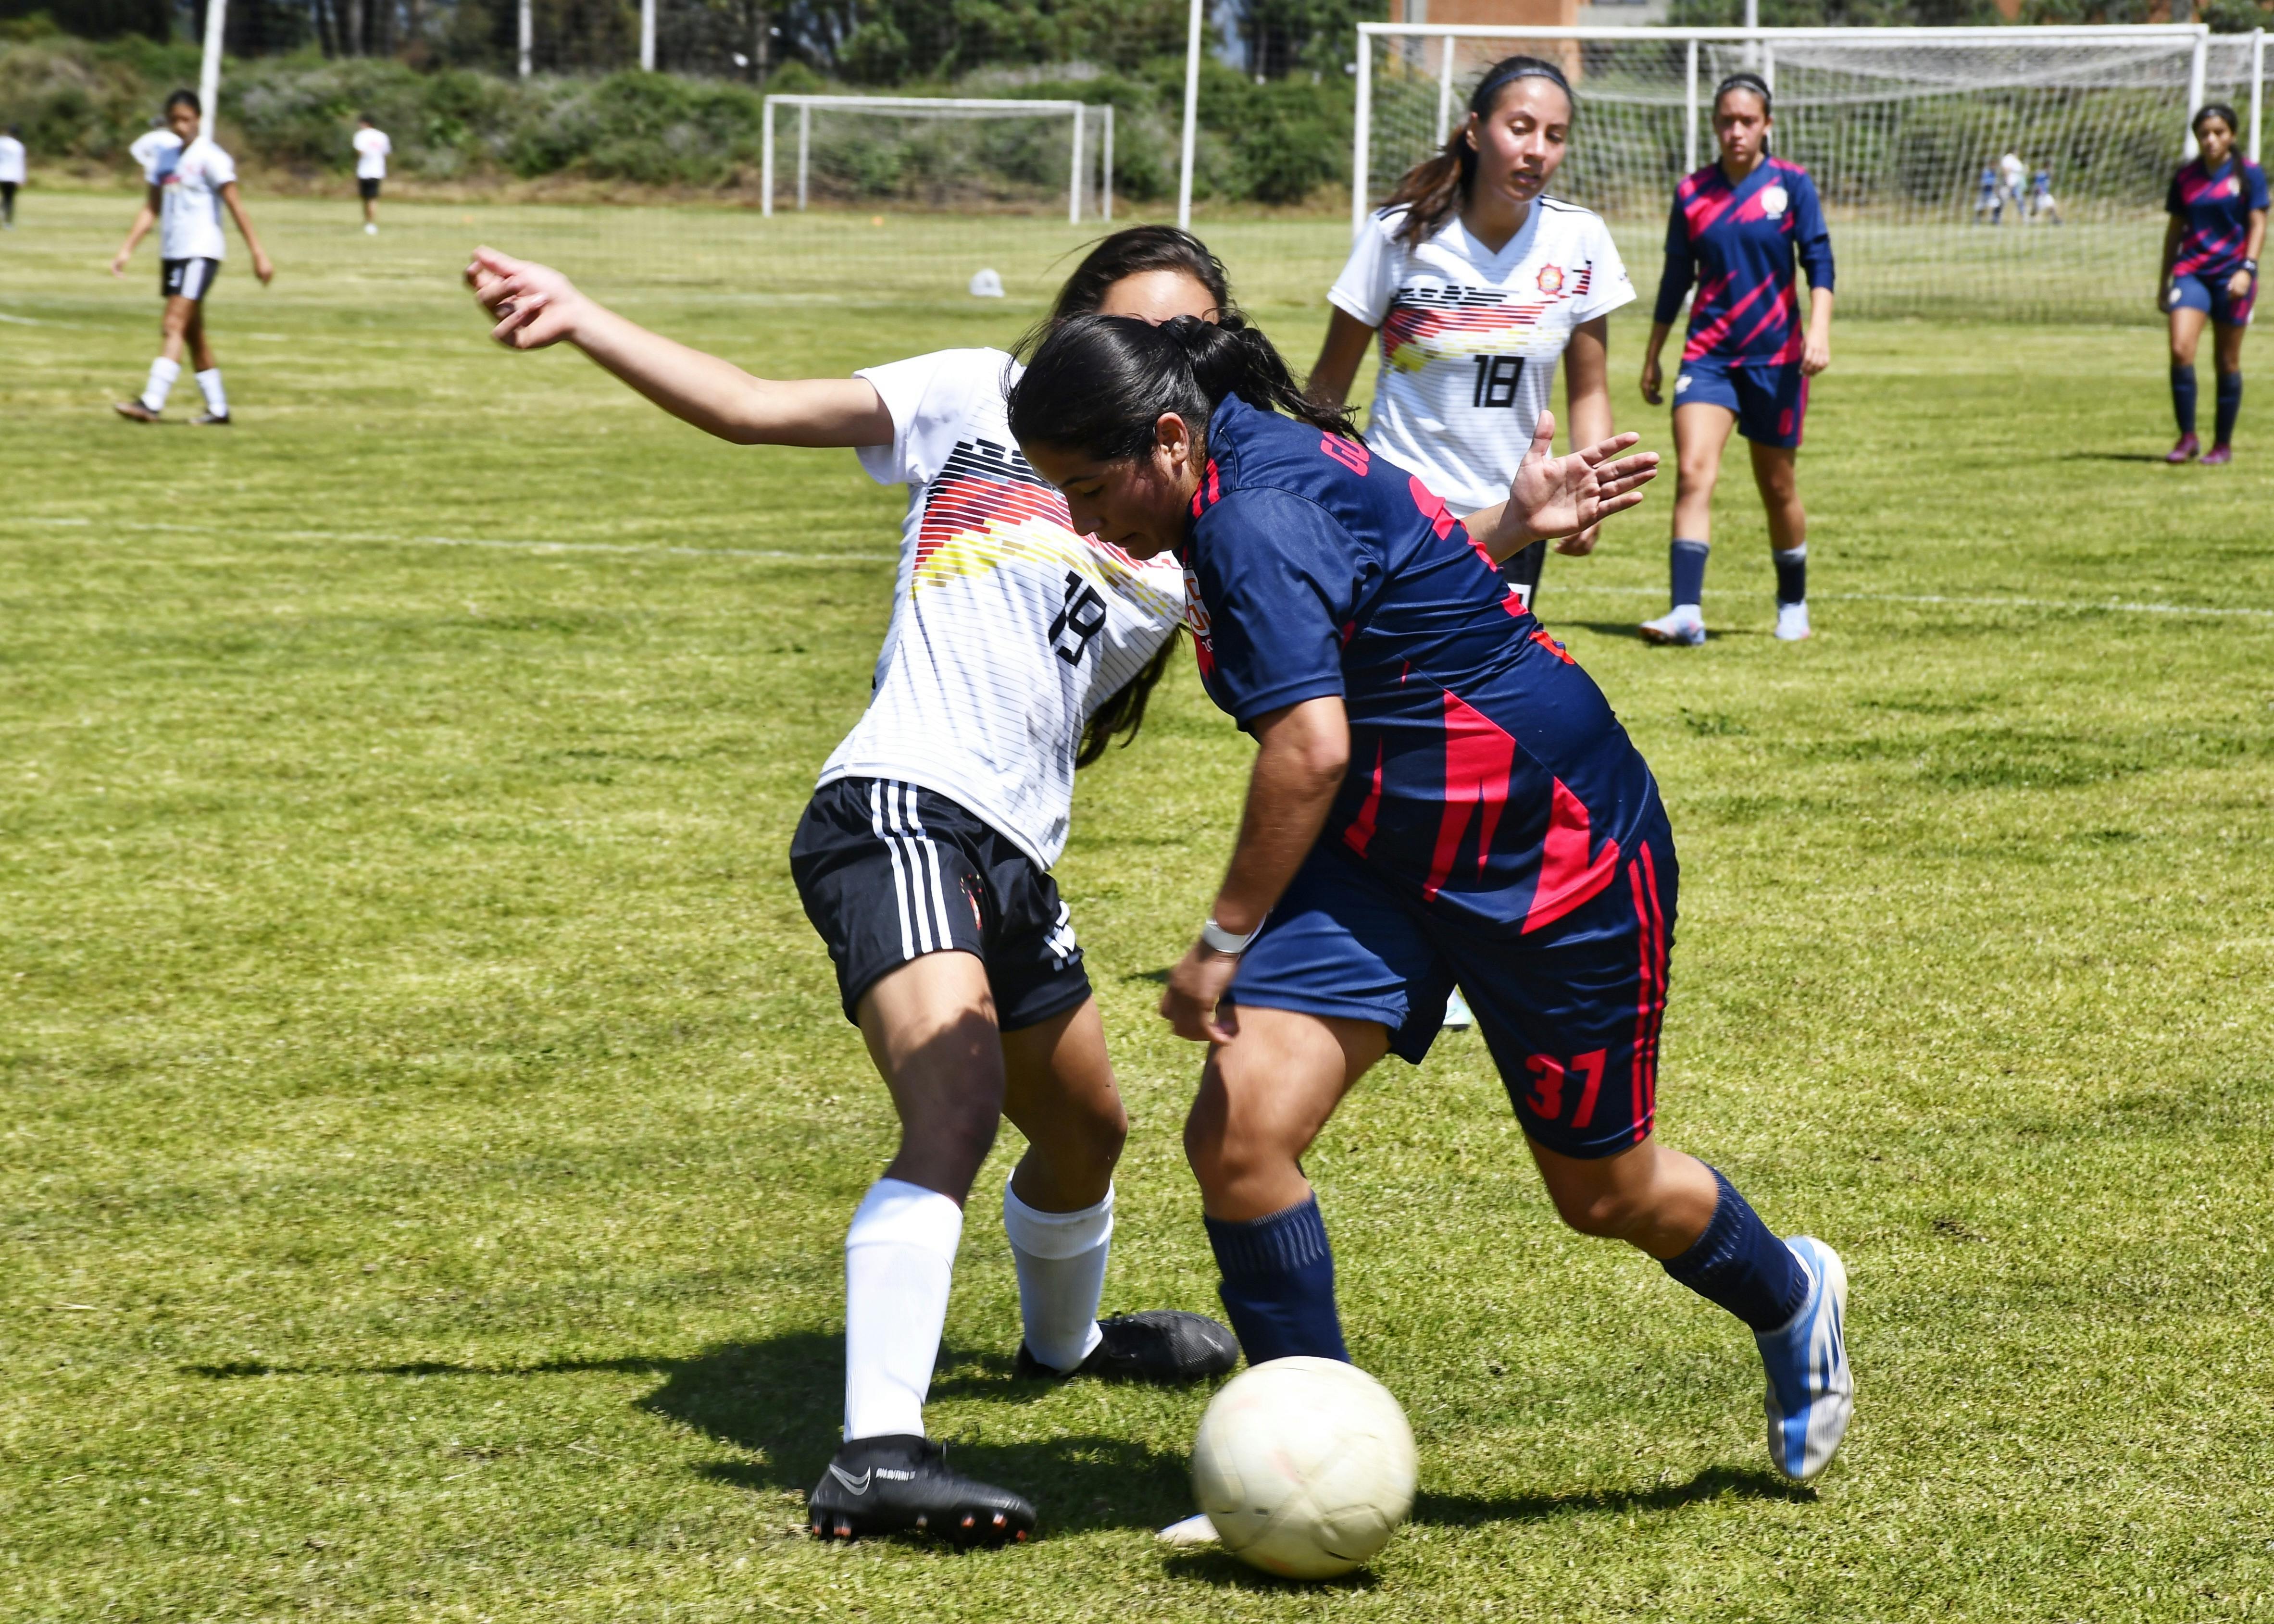 Women Playing Football Match · Free Stock Photo